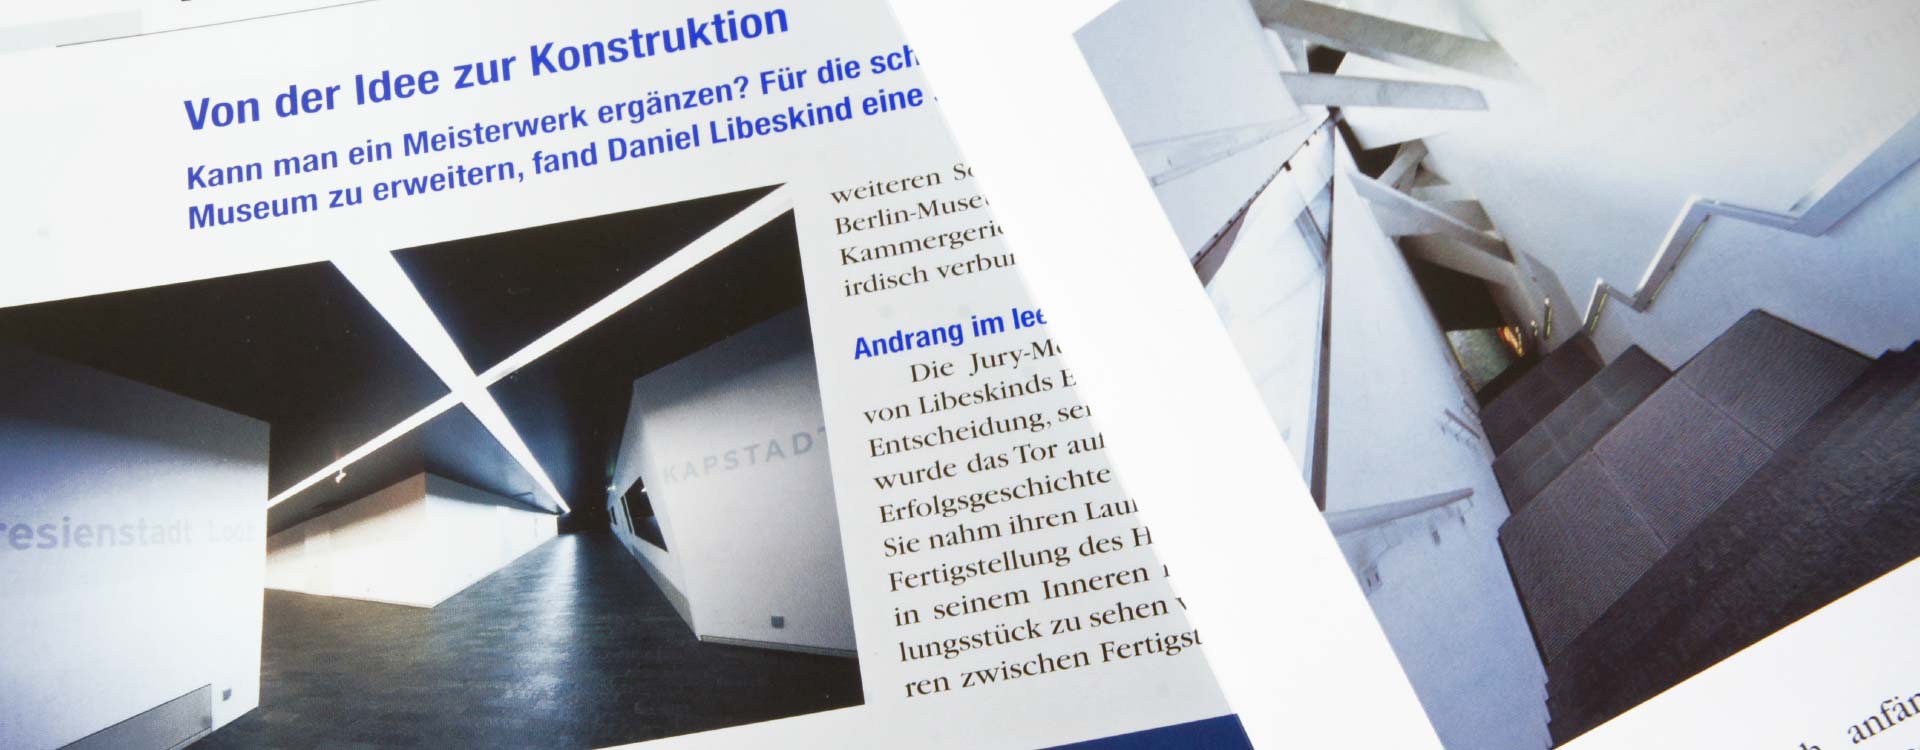 Brochure Der Glashof – Veranstaltungssaal für das Jüdische Museum Stahl-Informations-Zentrum; Design: Kattrin Richter | Graphic Design Studio